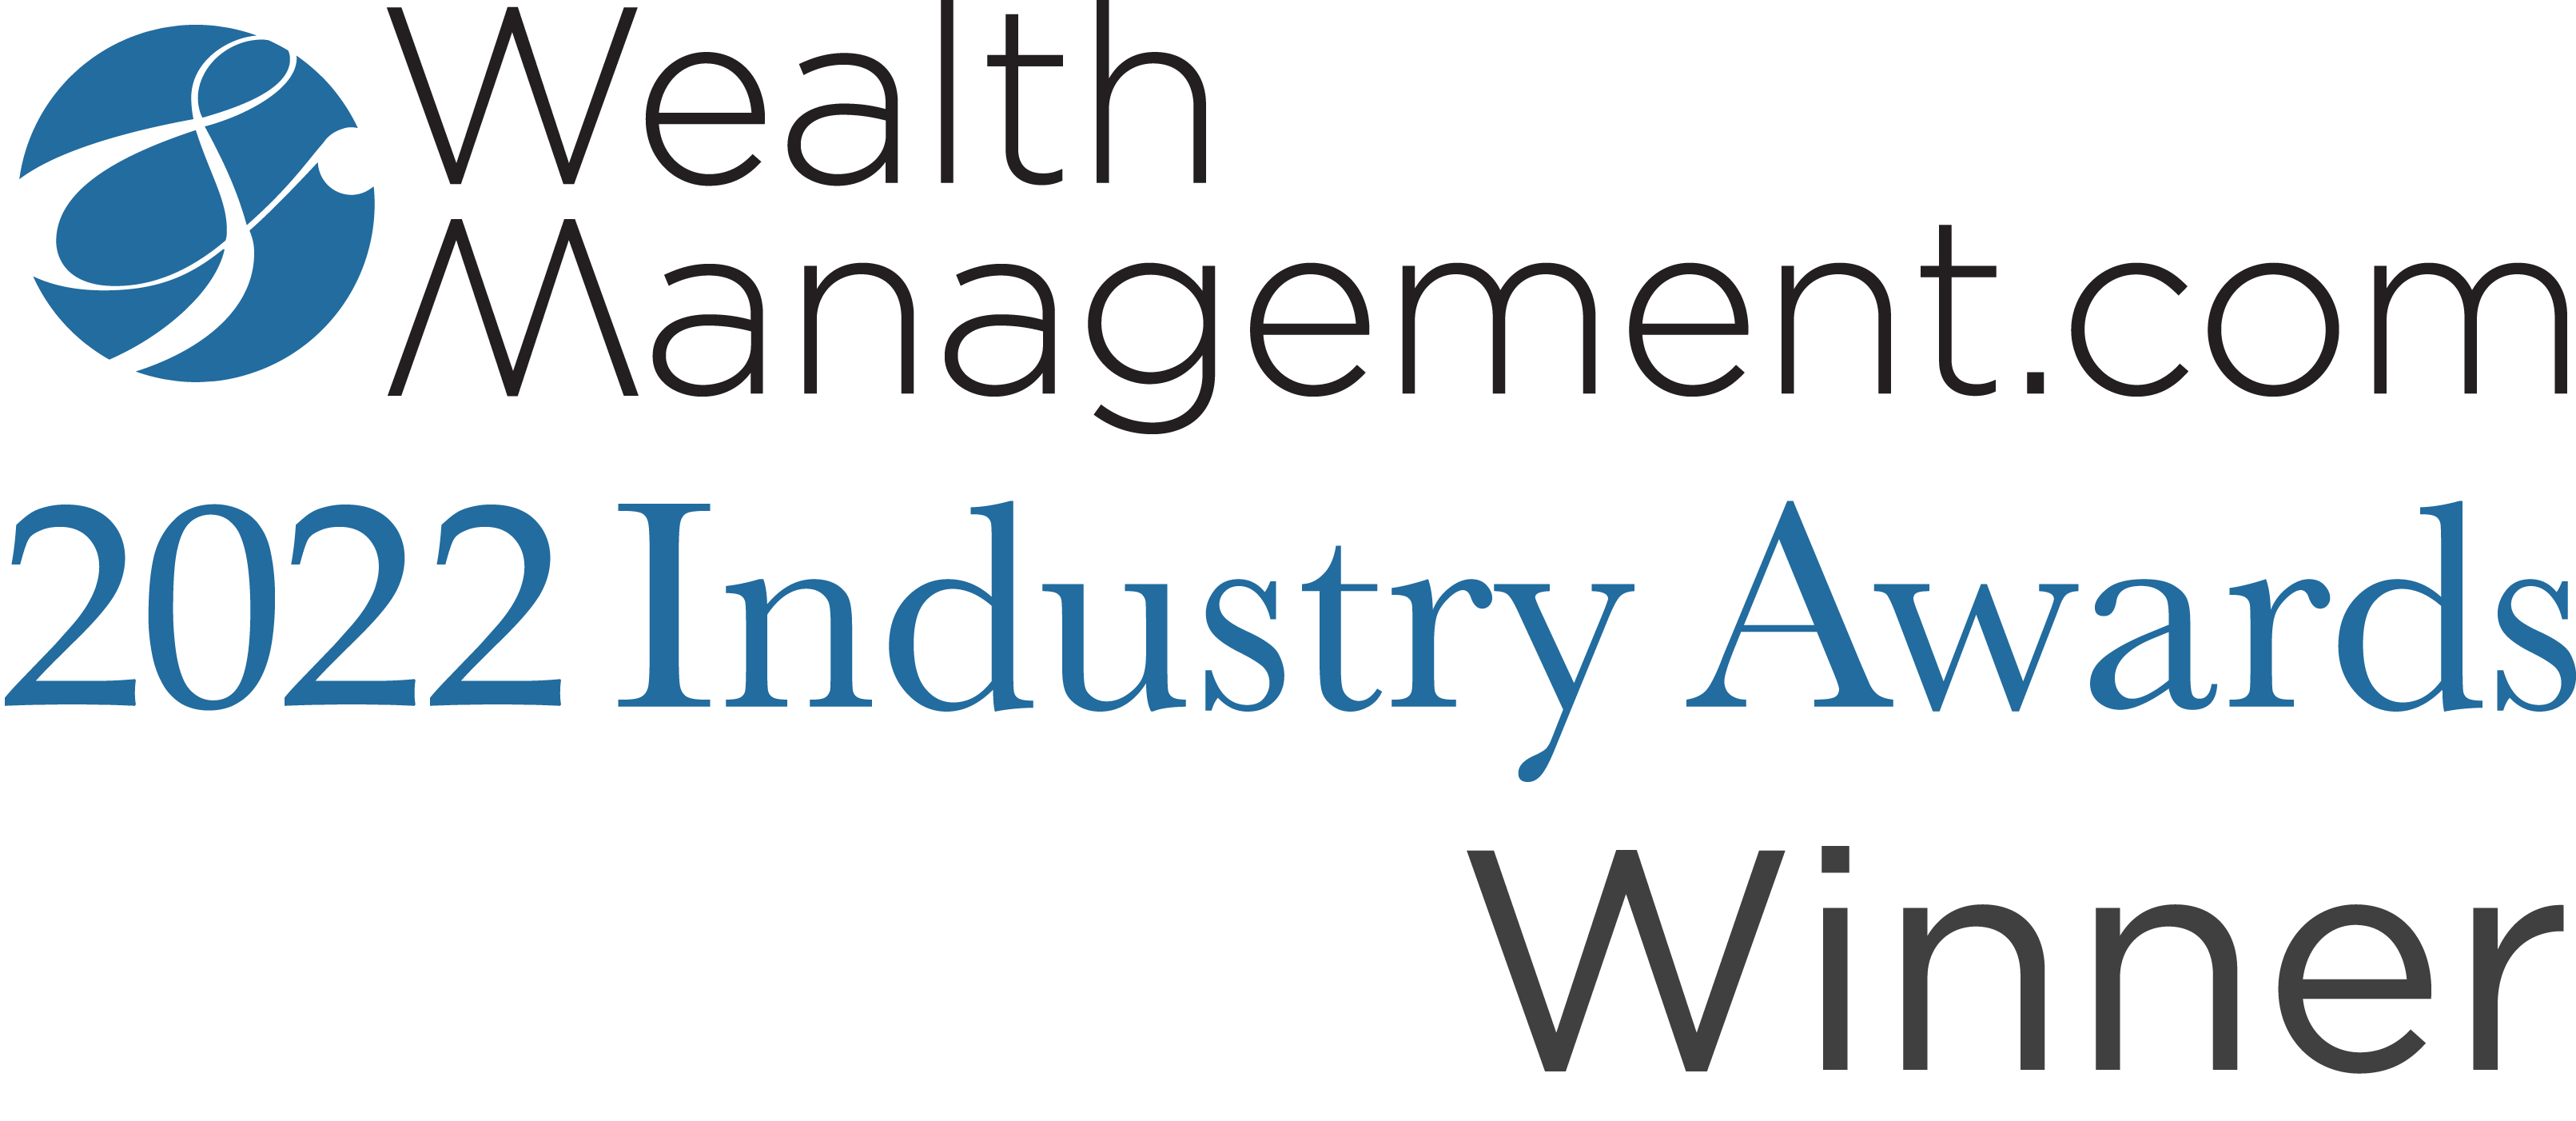 WealthManagement.com 2022 Industry Awards Winner